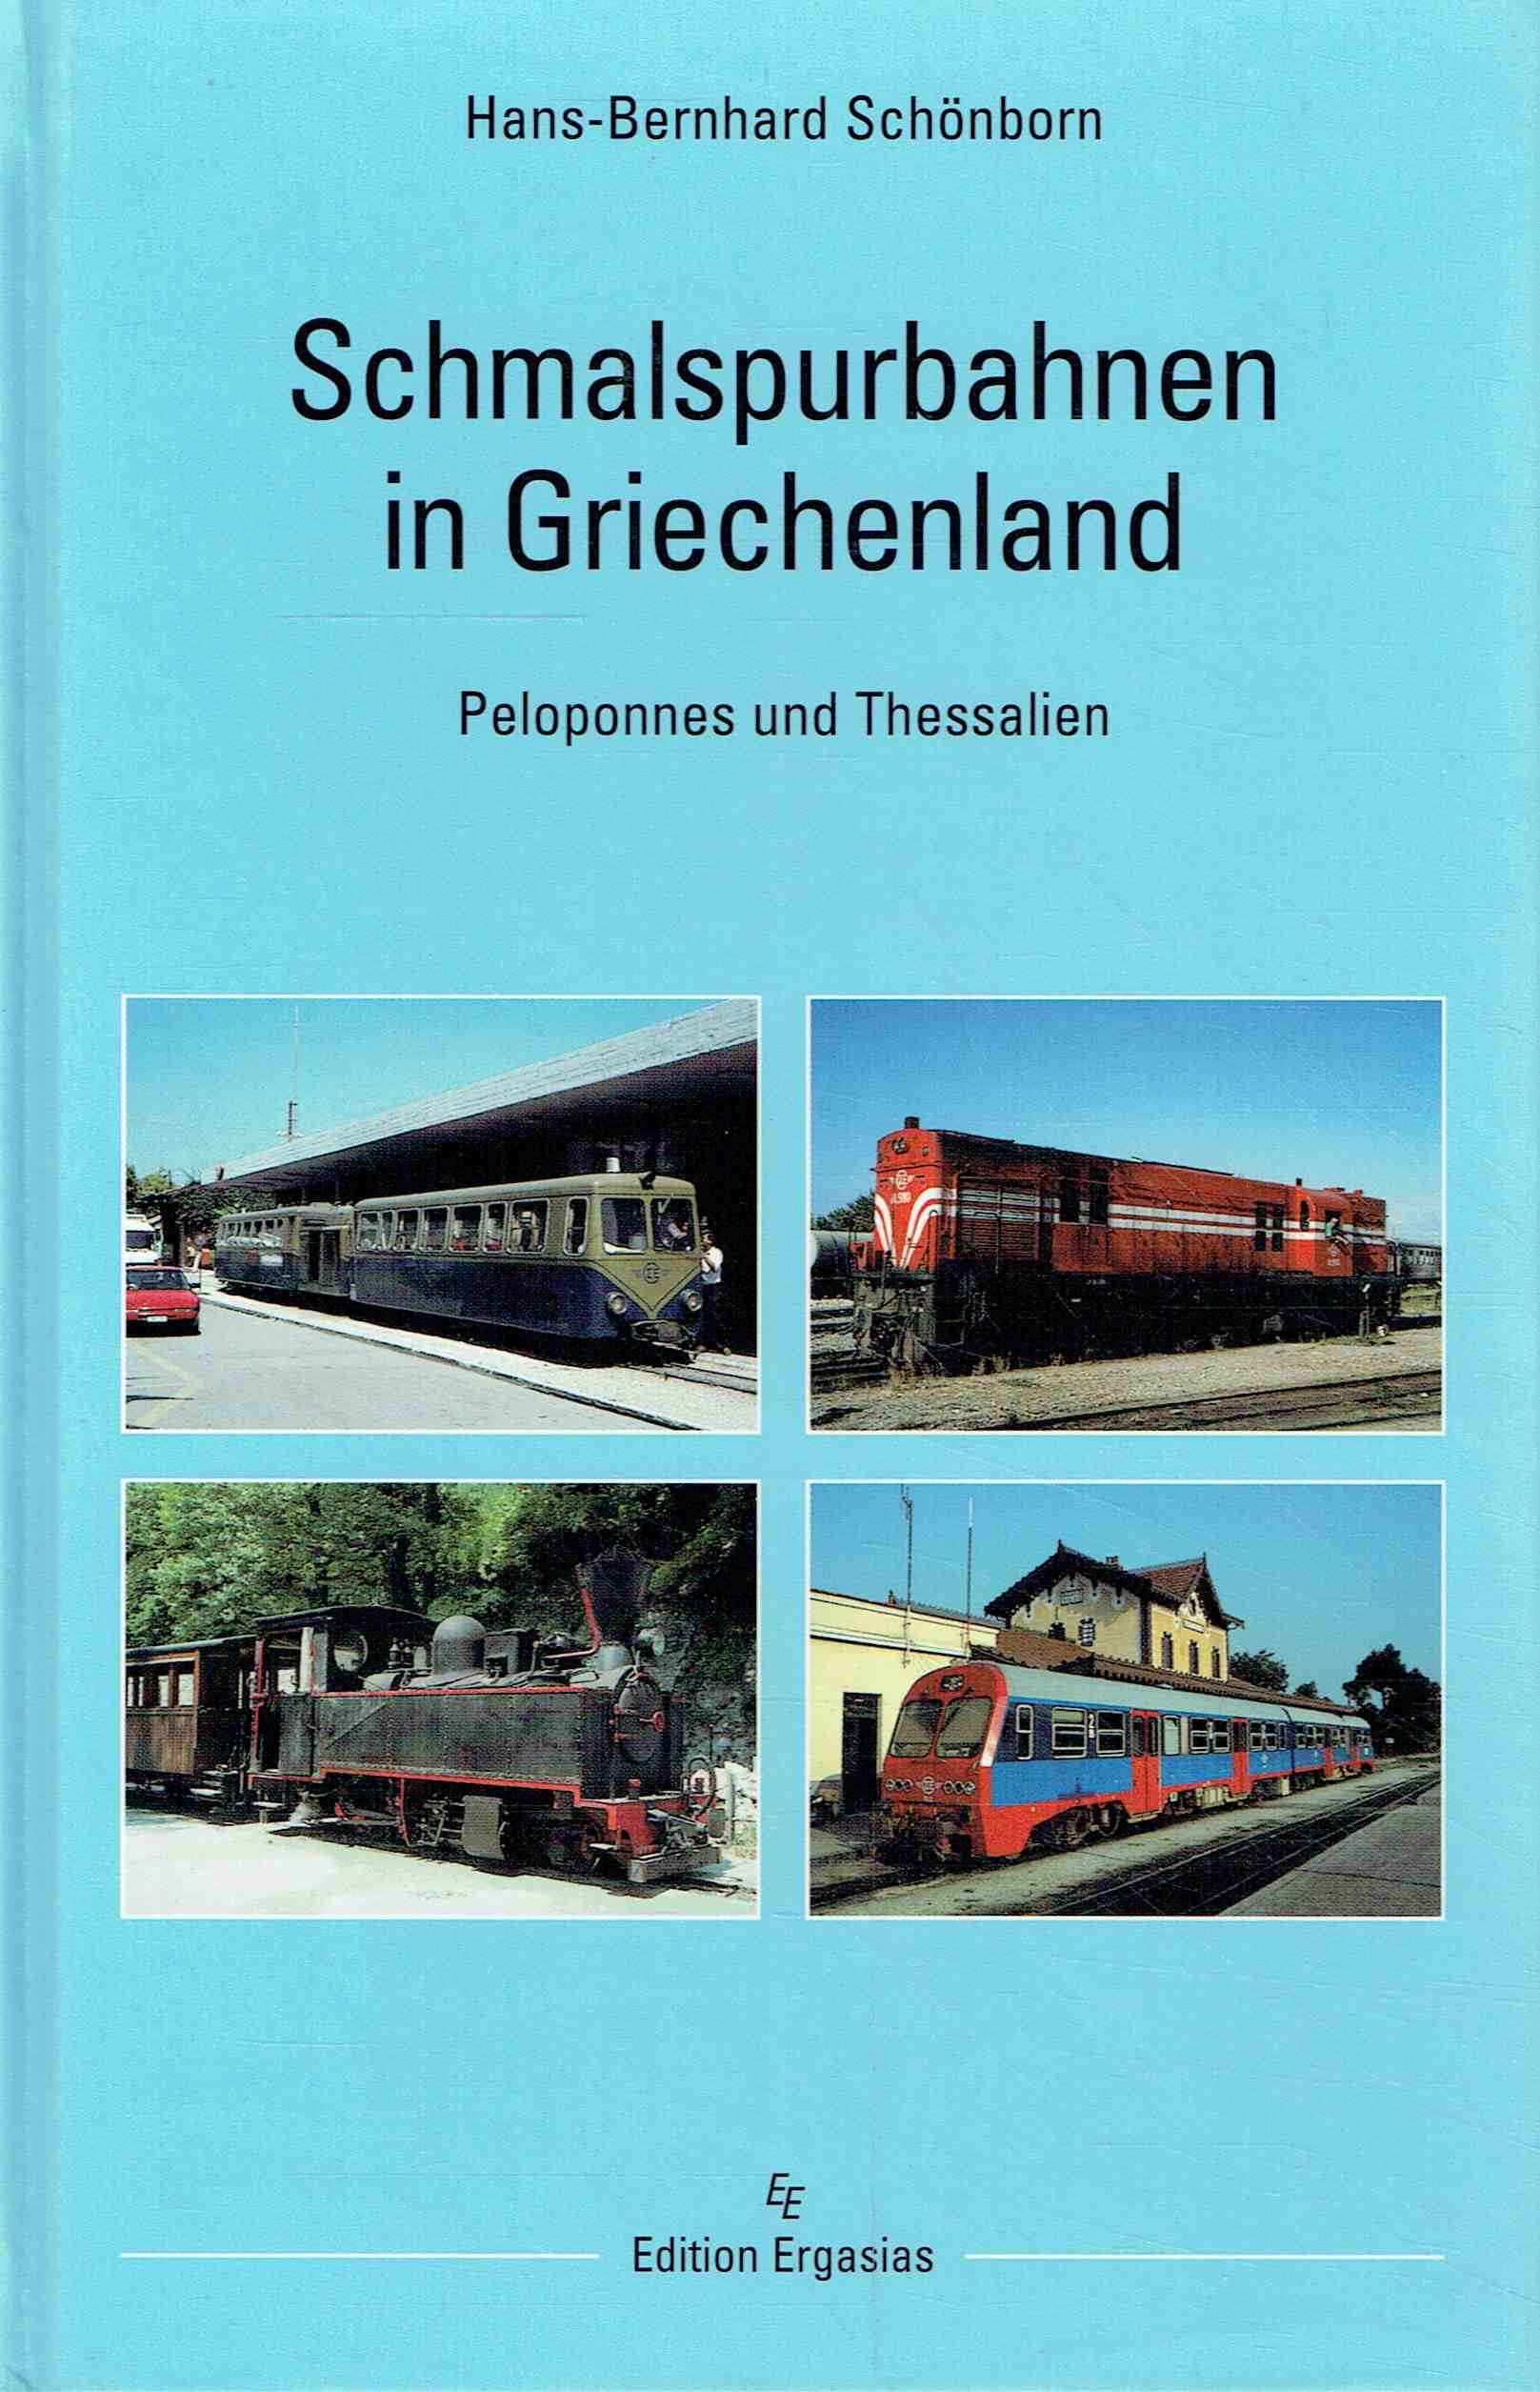 Schmalspurbahnen in Griechenland - Peloponnes und Thessalien. - Hans-Bernhard Schönborn